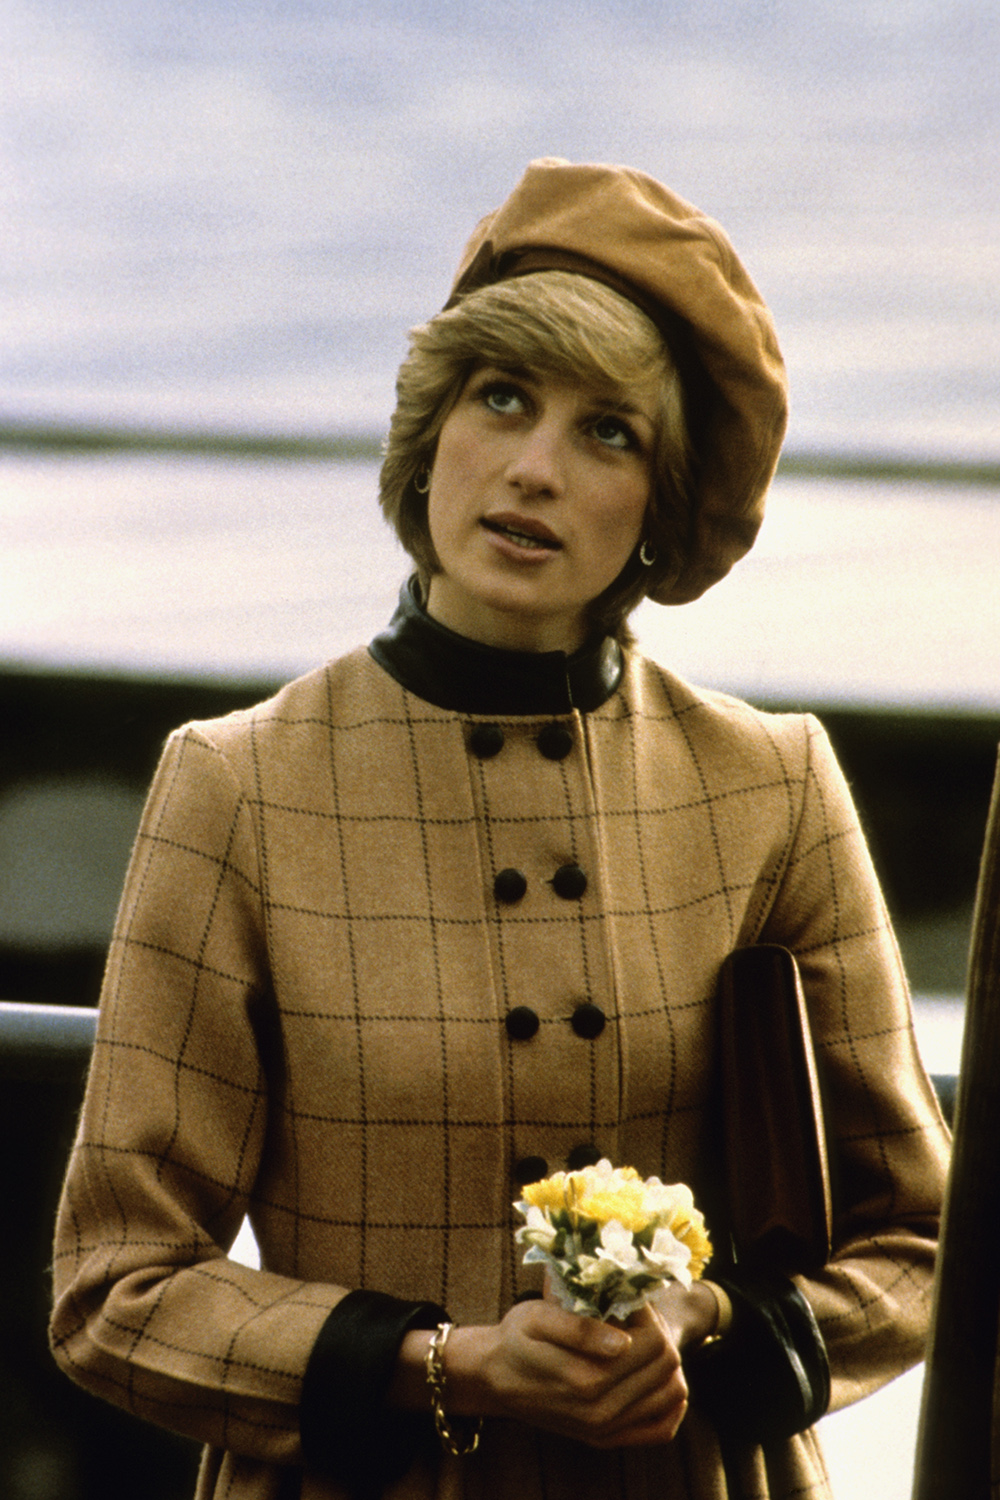 November 1st, 1982 - Princess Diana visits Wales.